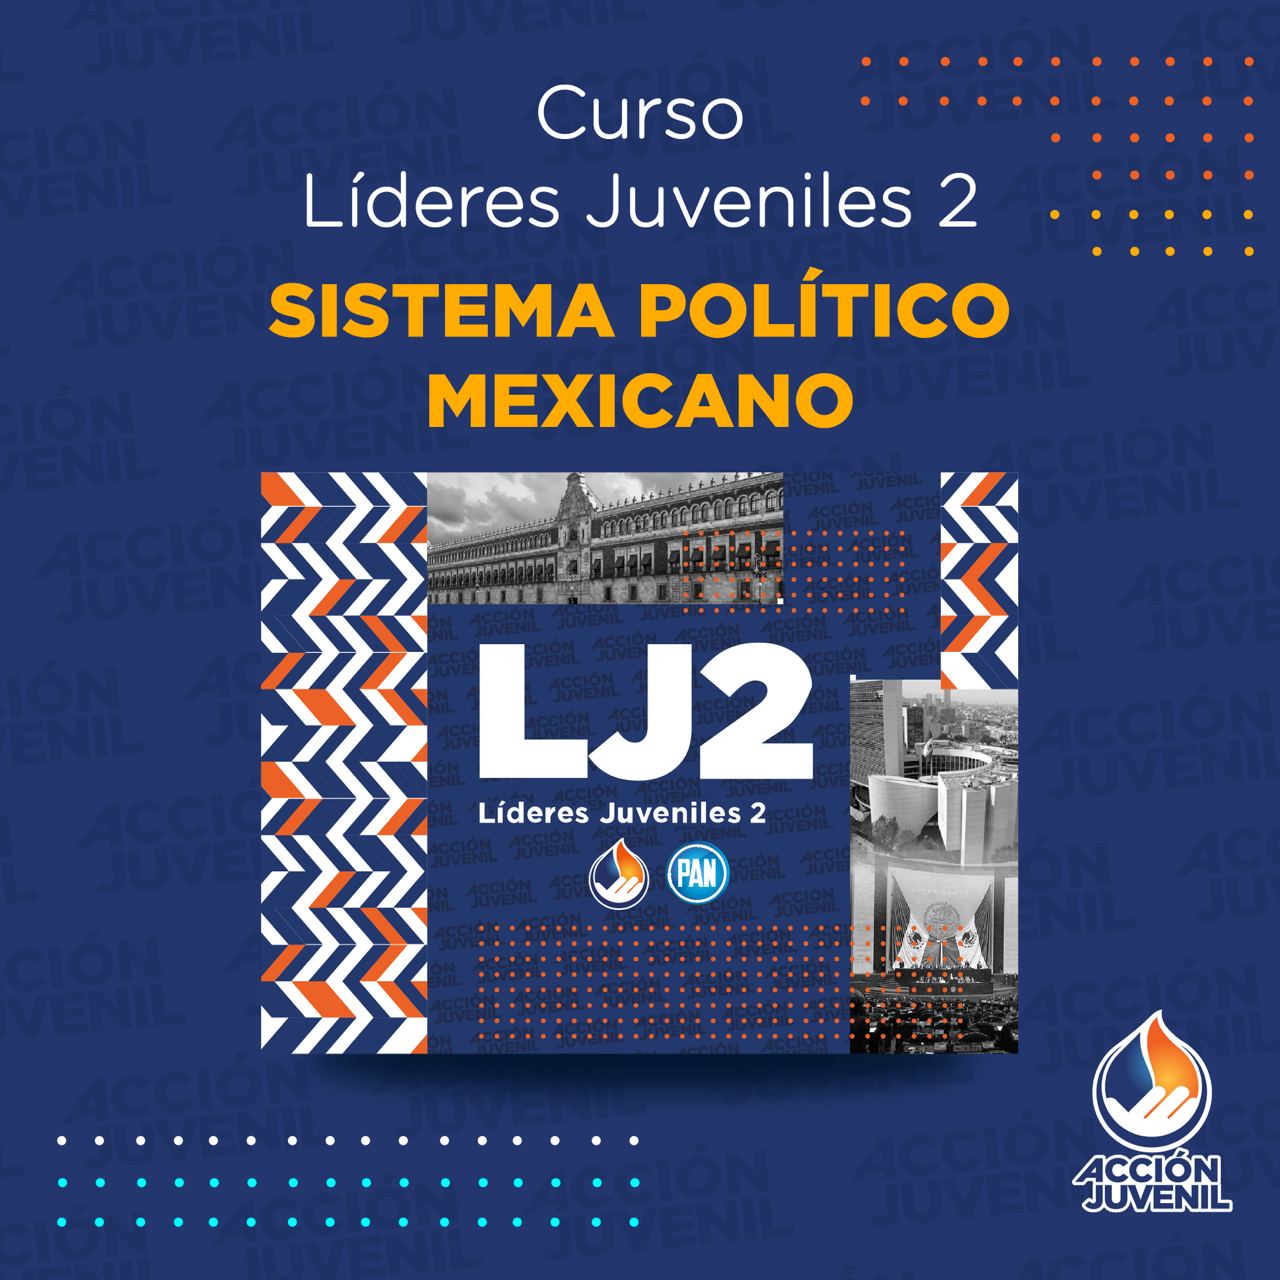 Curso Líderes Juveniles 2 Sistema Político Mexicano Xalapa, VER 03/09/22